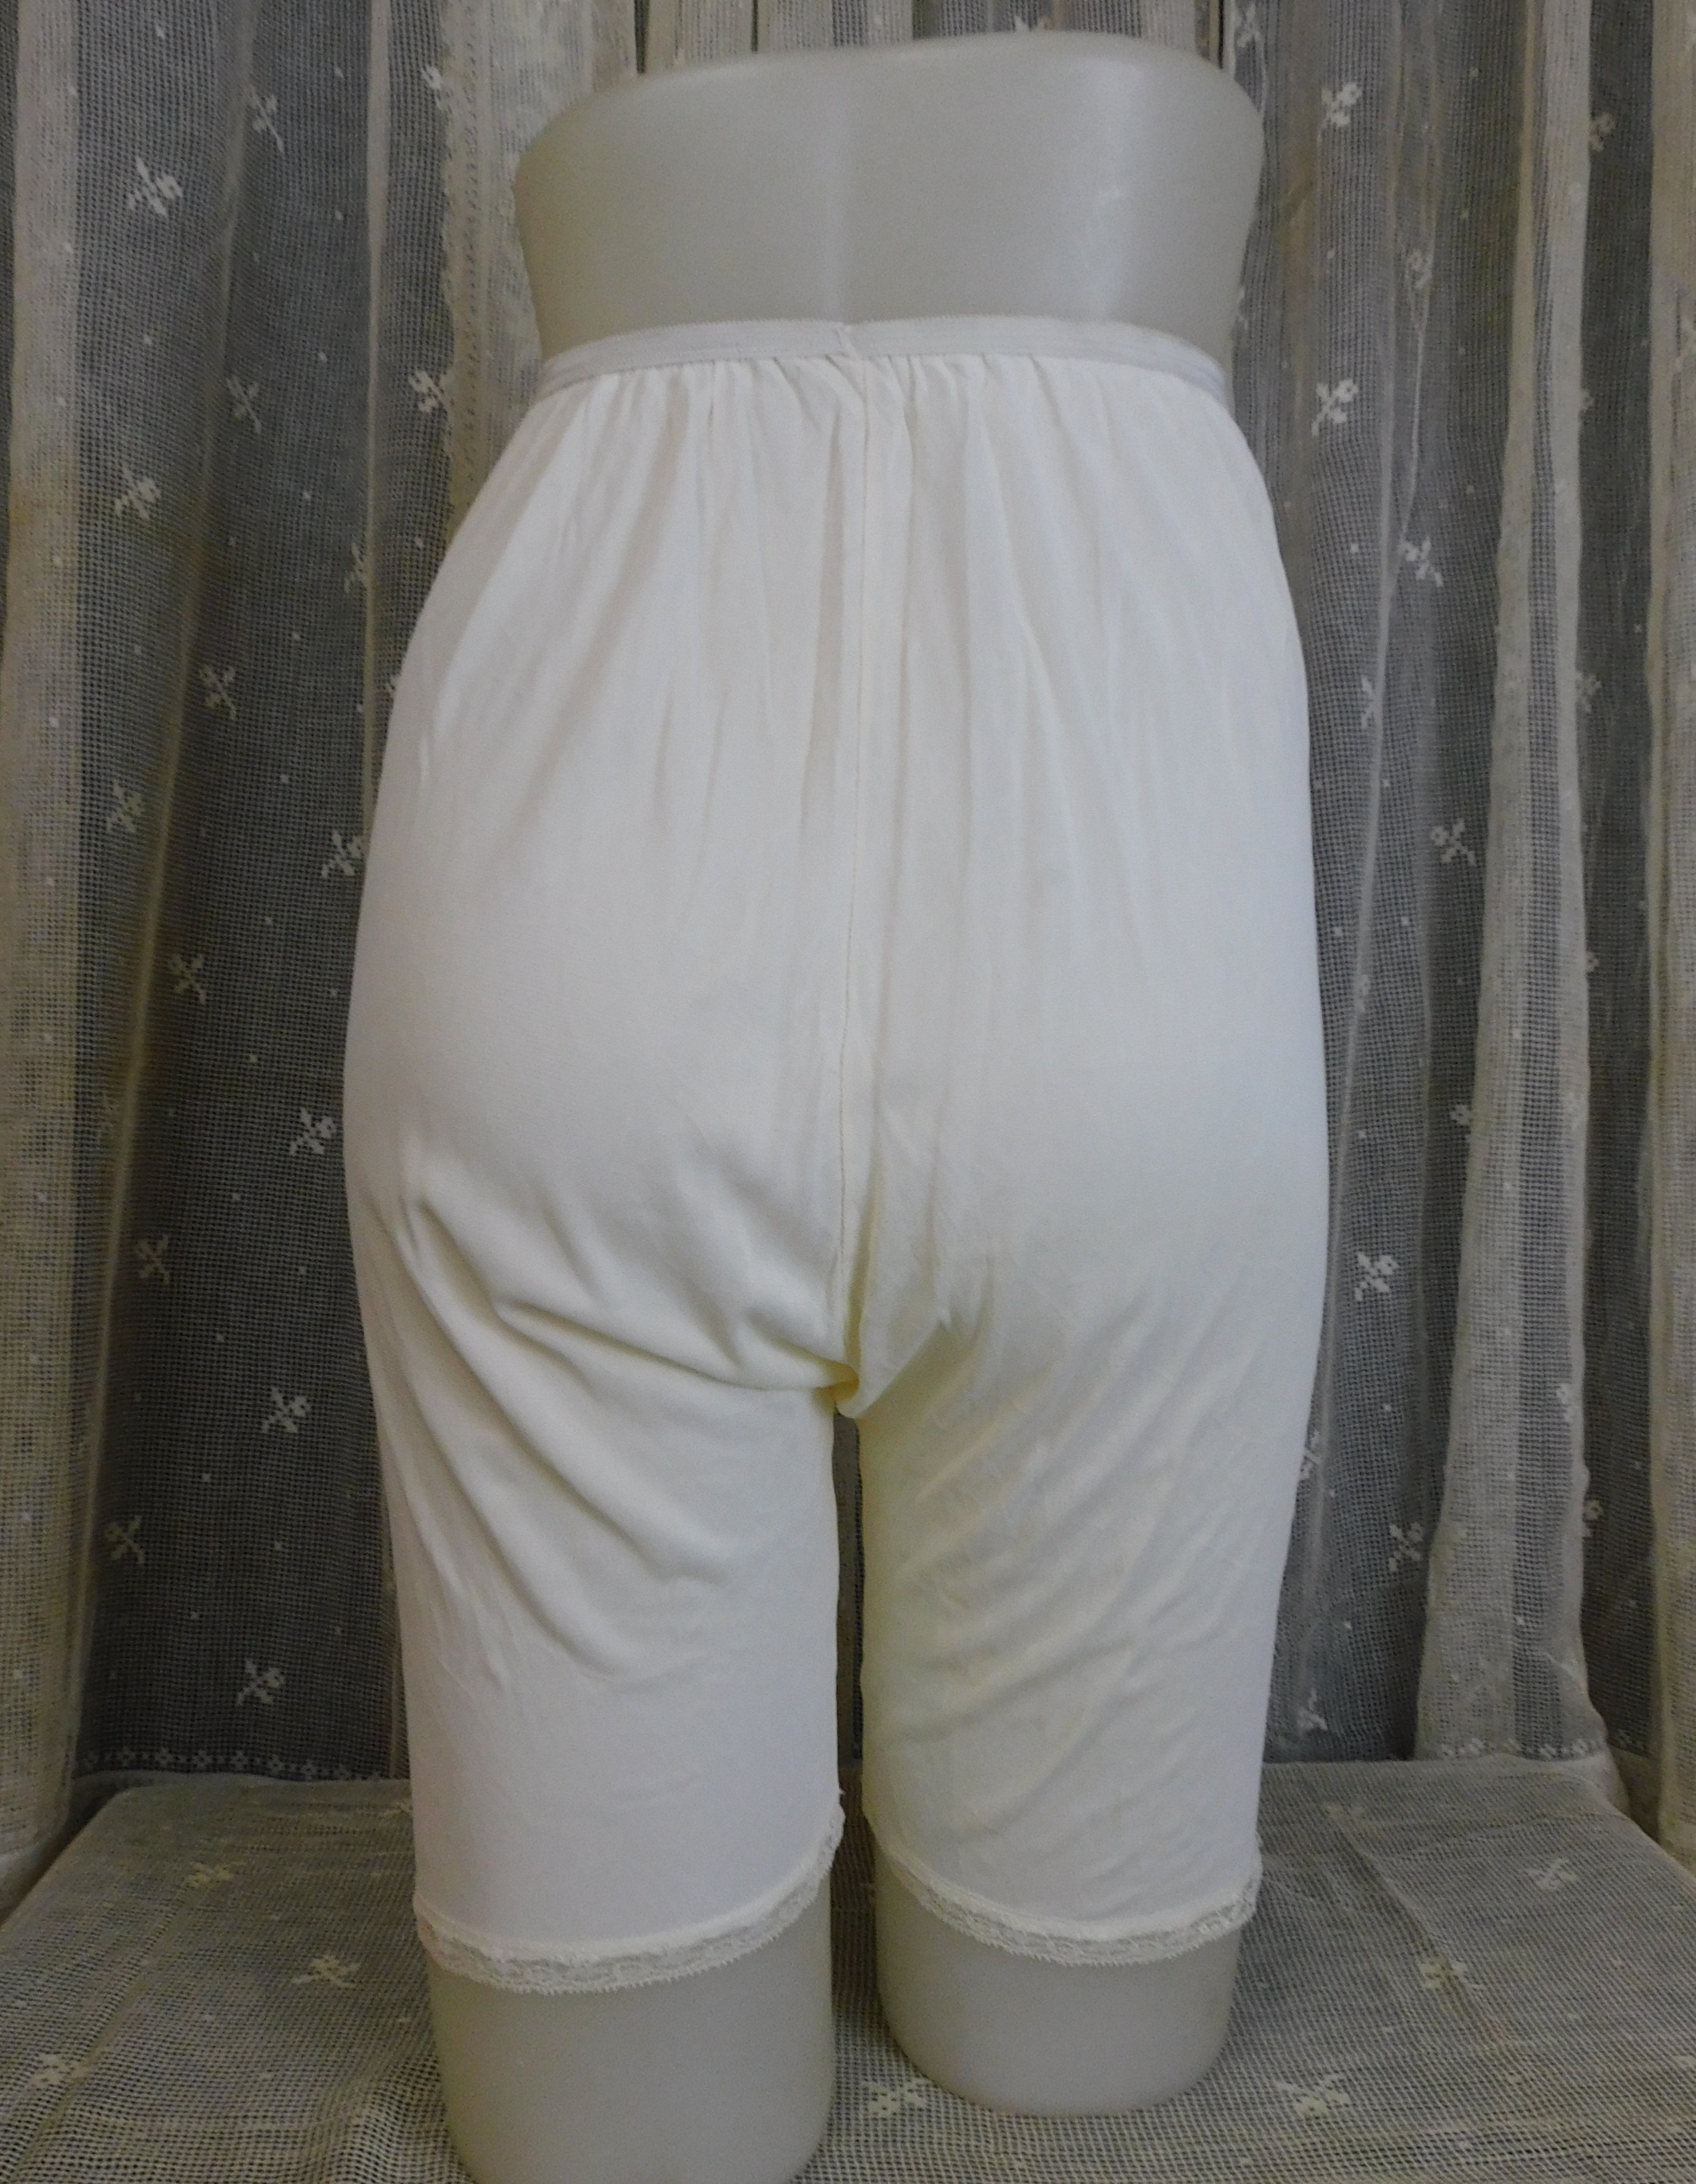 Vintage White Pettipants Panties with Blue Applique, Acetate size 7